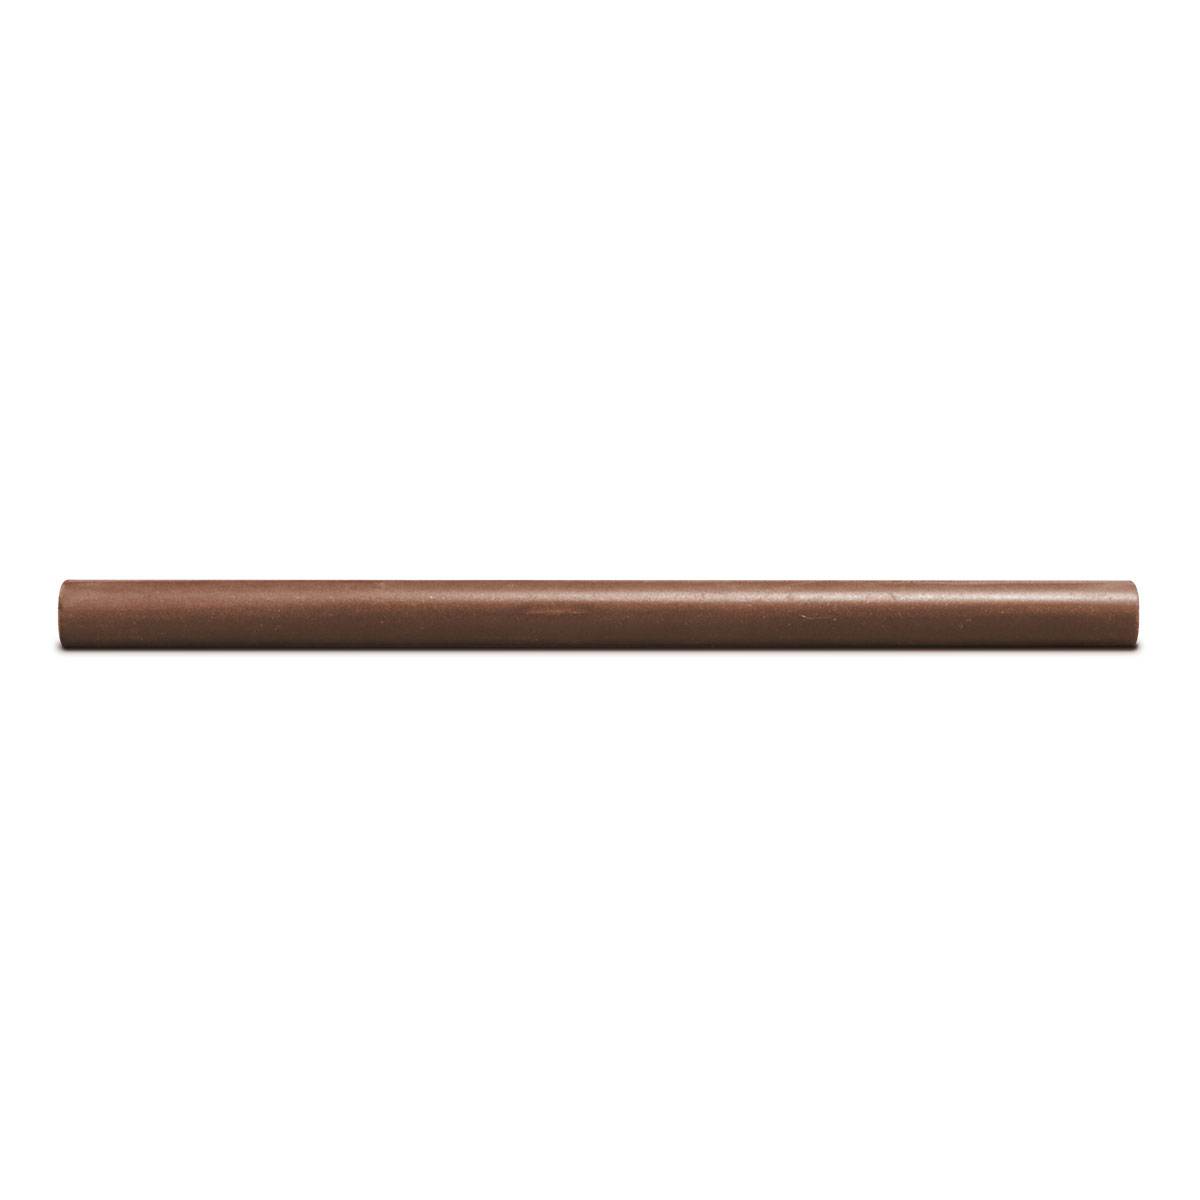 Cratex bâton de broyage, Ø 12,5 x 150 mm, Taille du grain 120, Rond, Brun clair